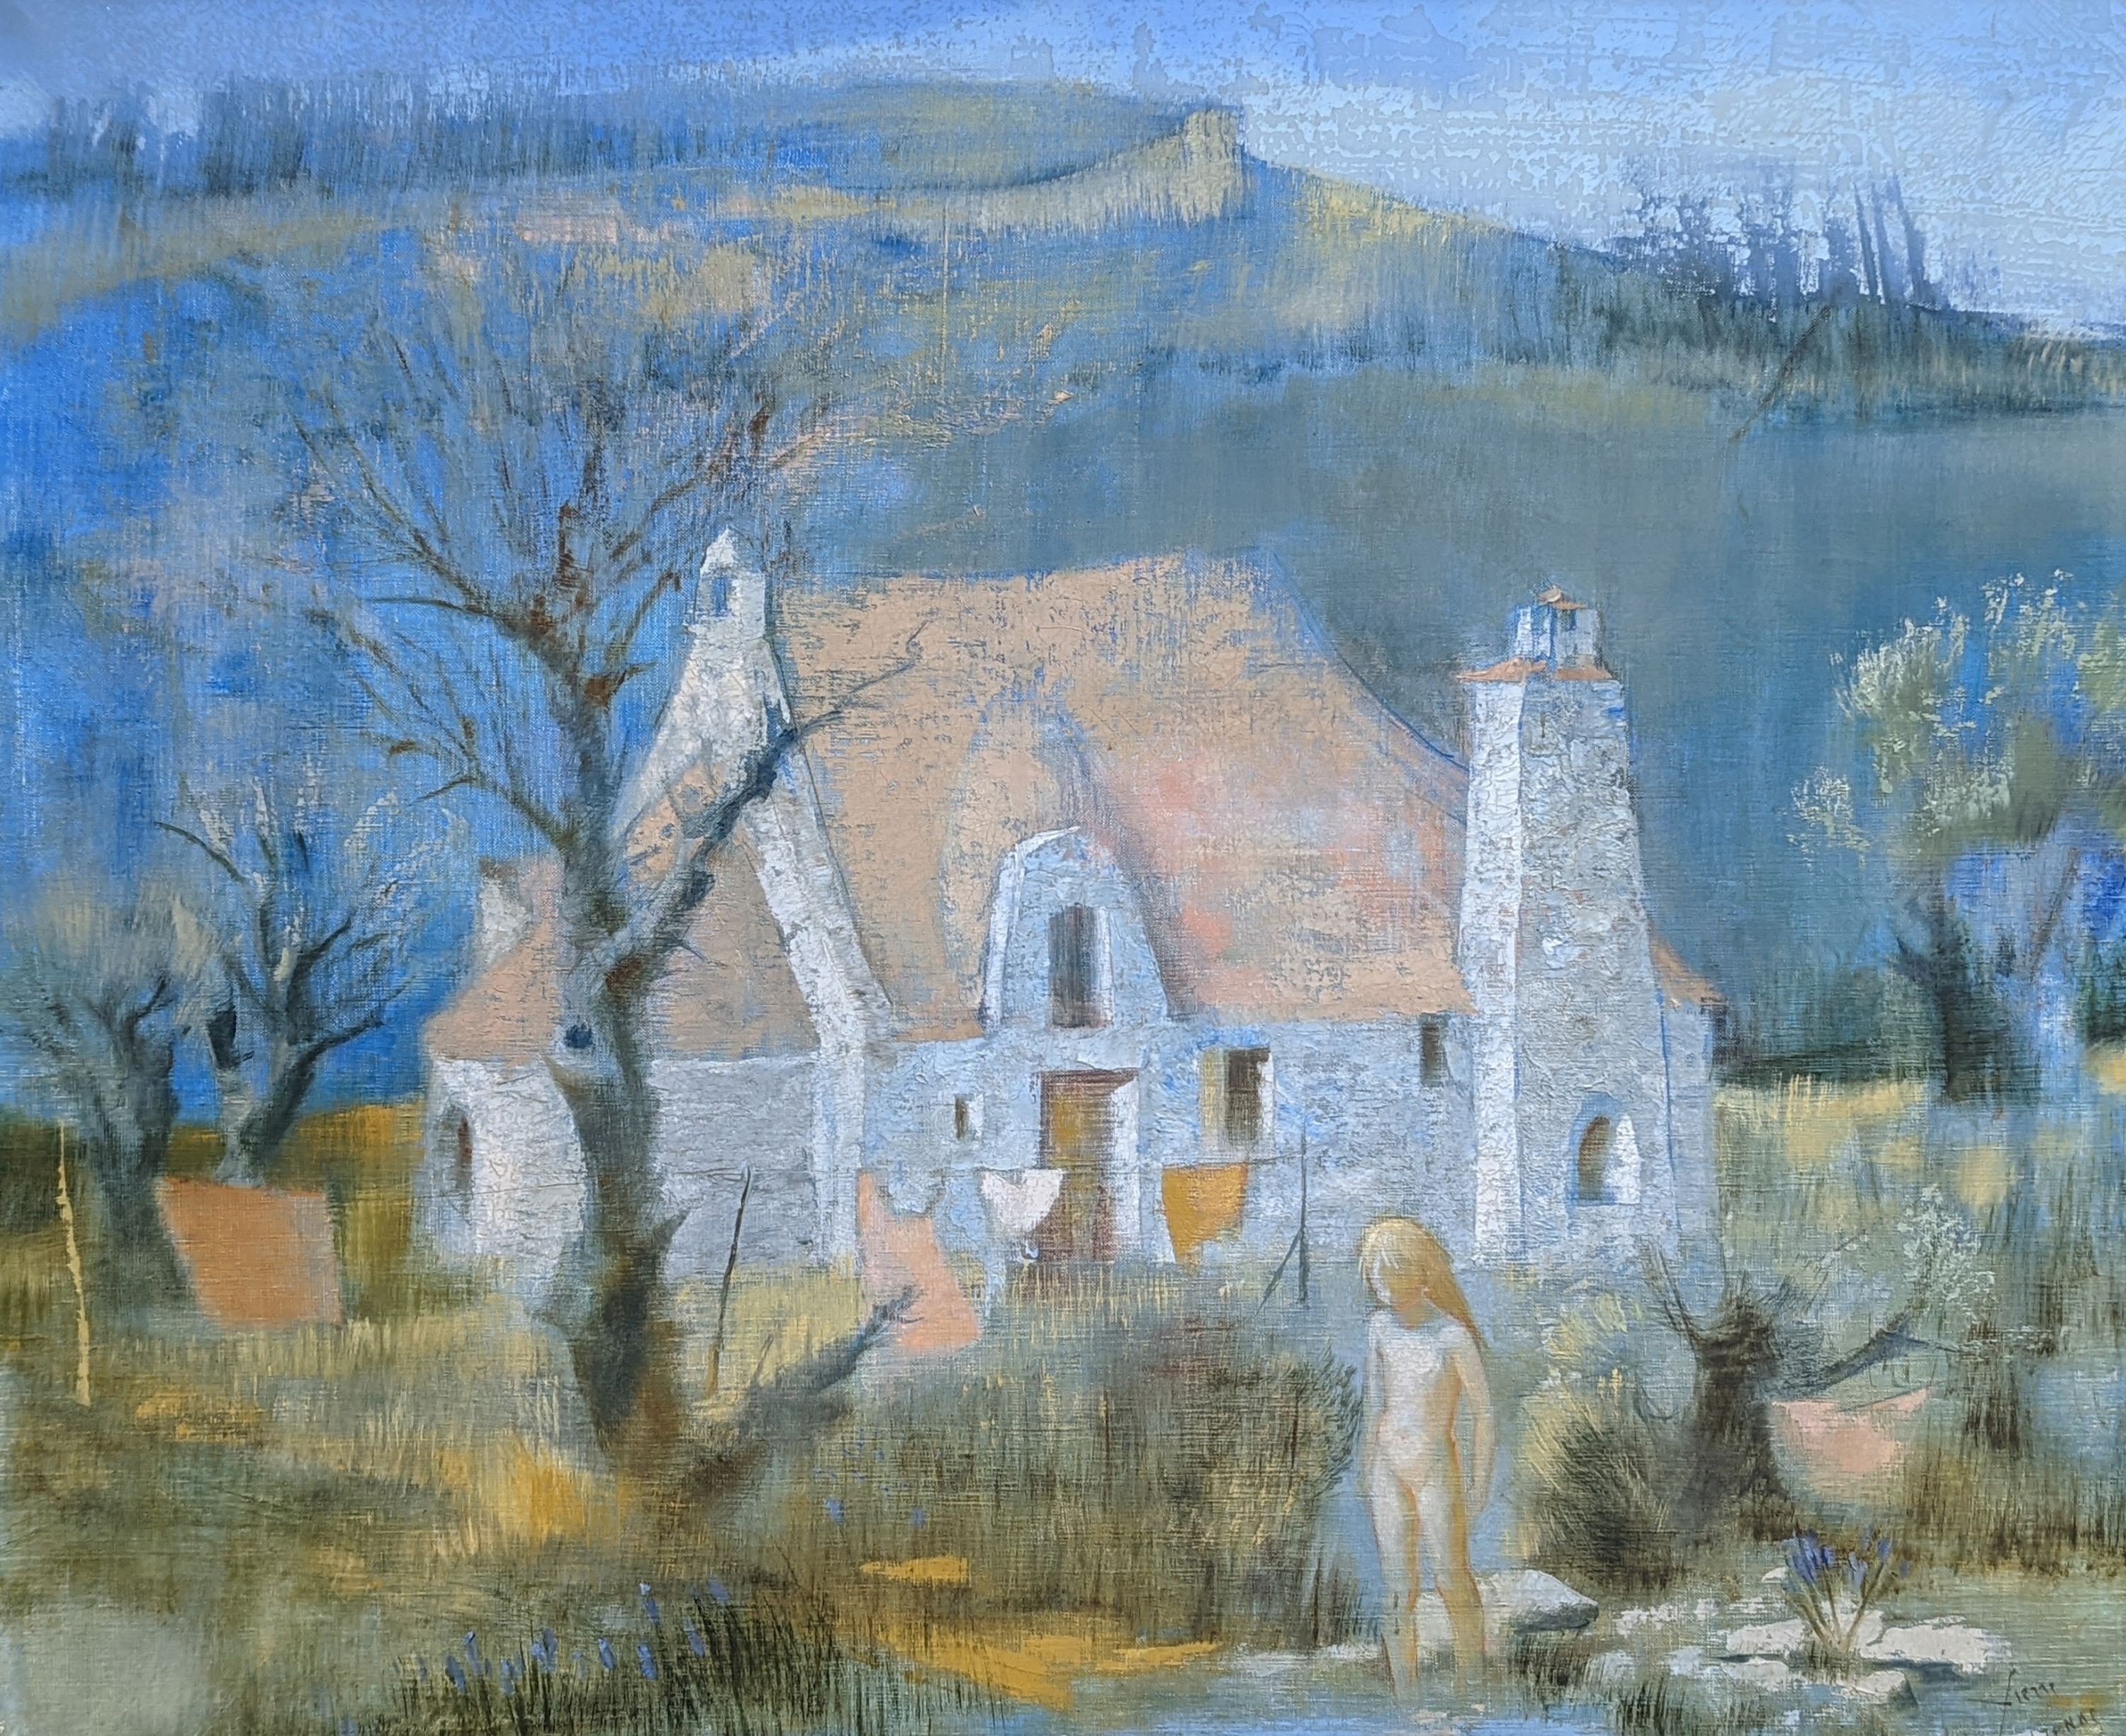 Pierre Lavarenne (1928-), oil on canvas, La Maison de la Colline, signed, 54 x 65cm